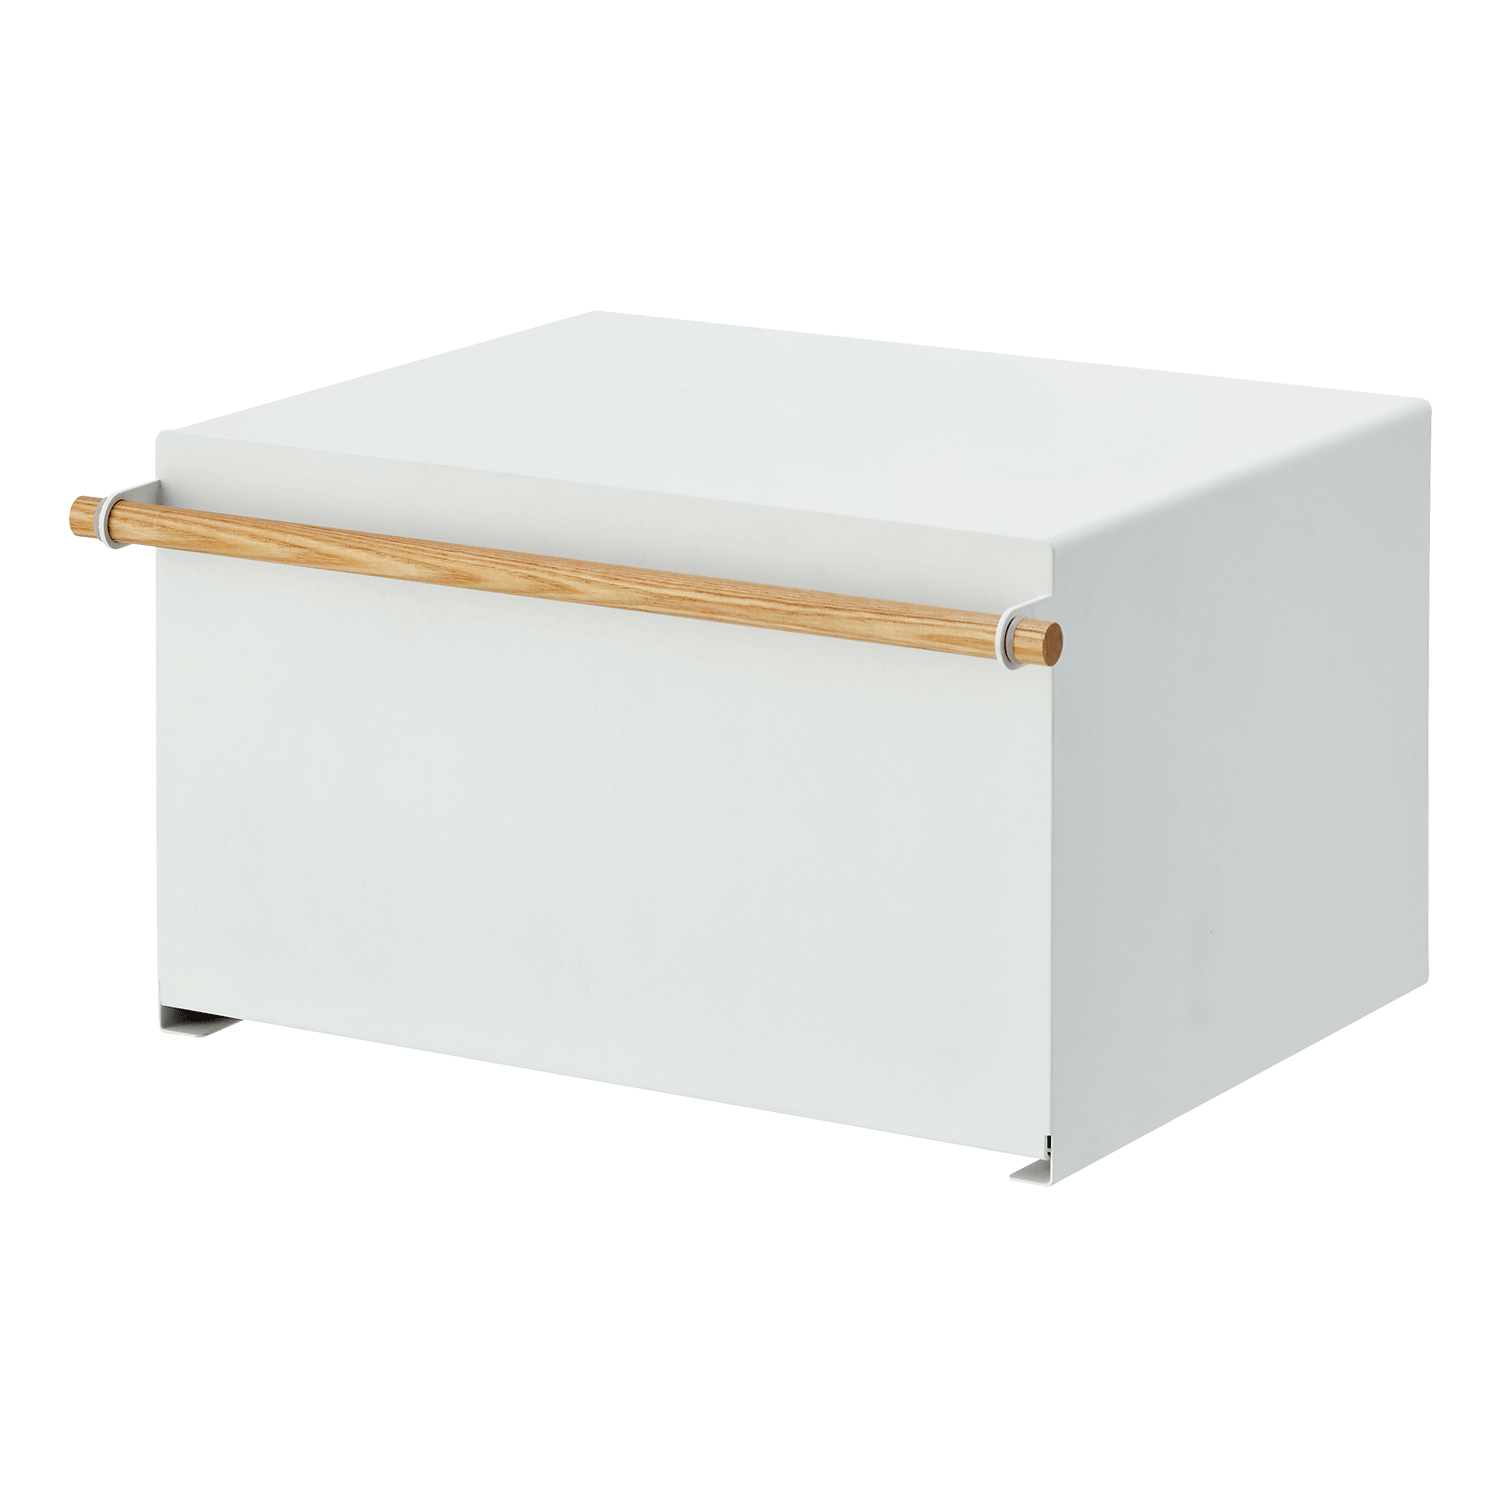 Bread Box Multi Storage Box Bread Container Airtight Vegetable